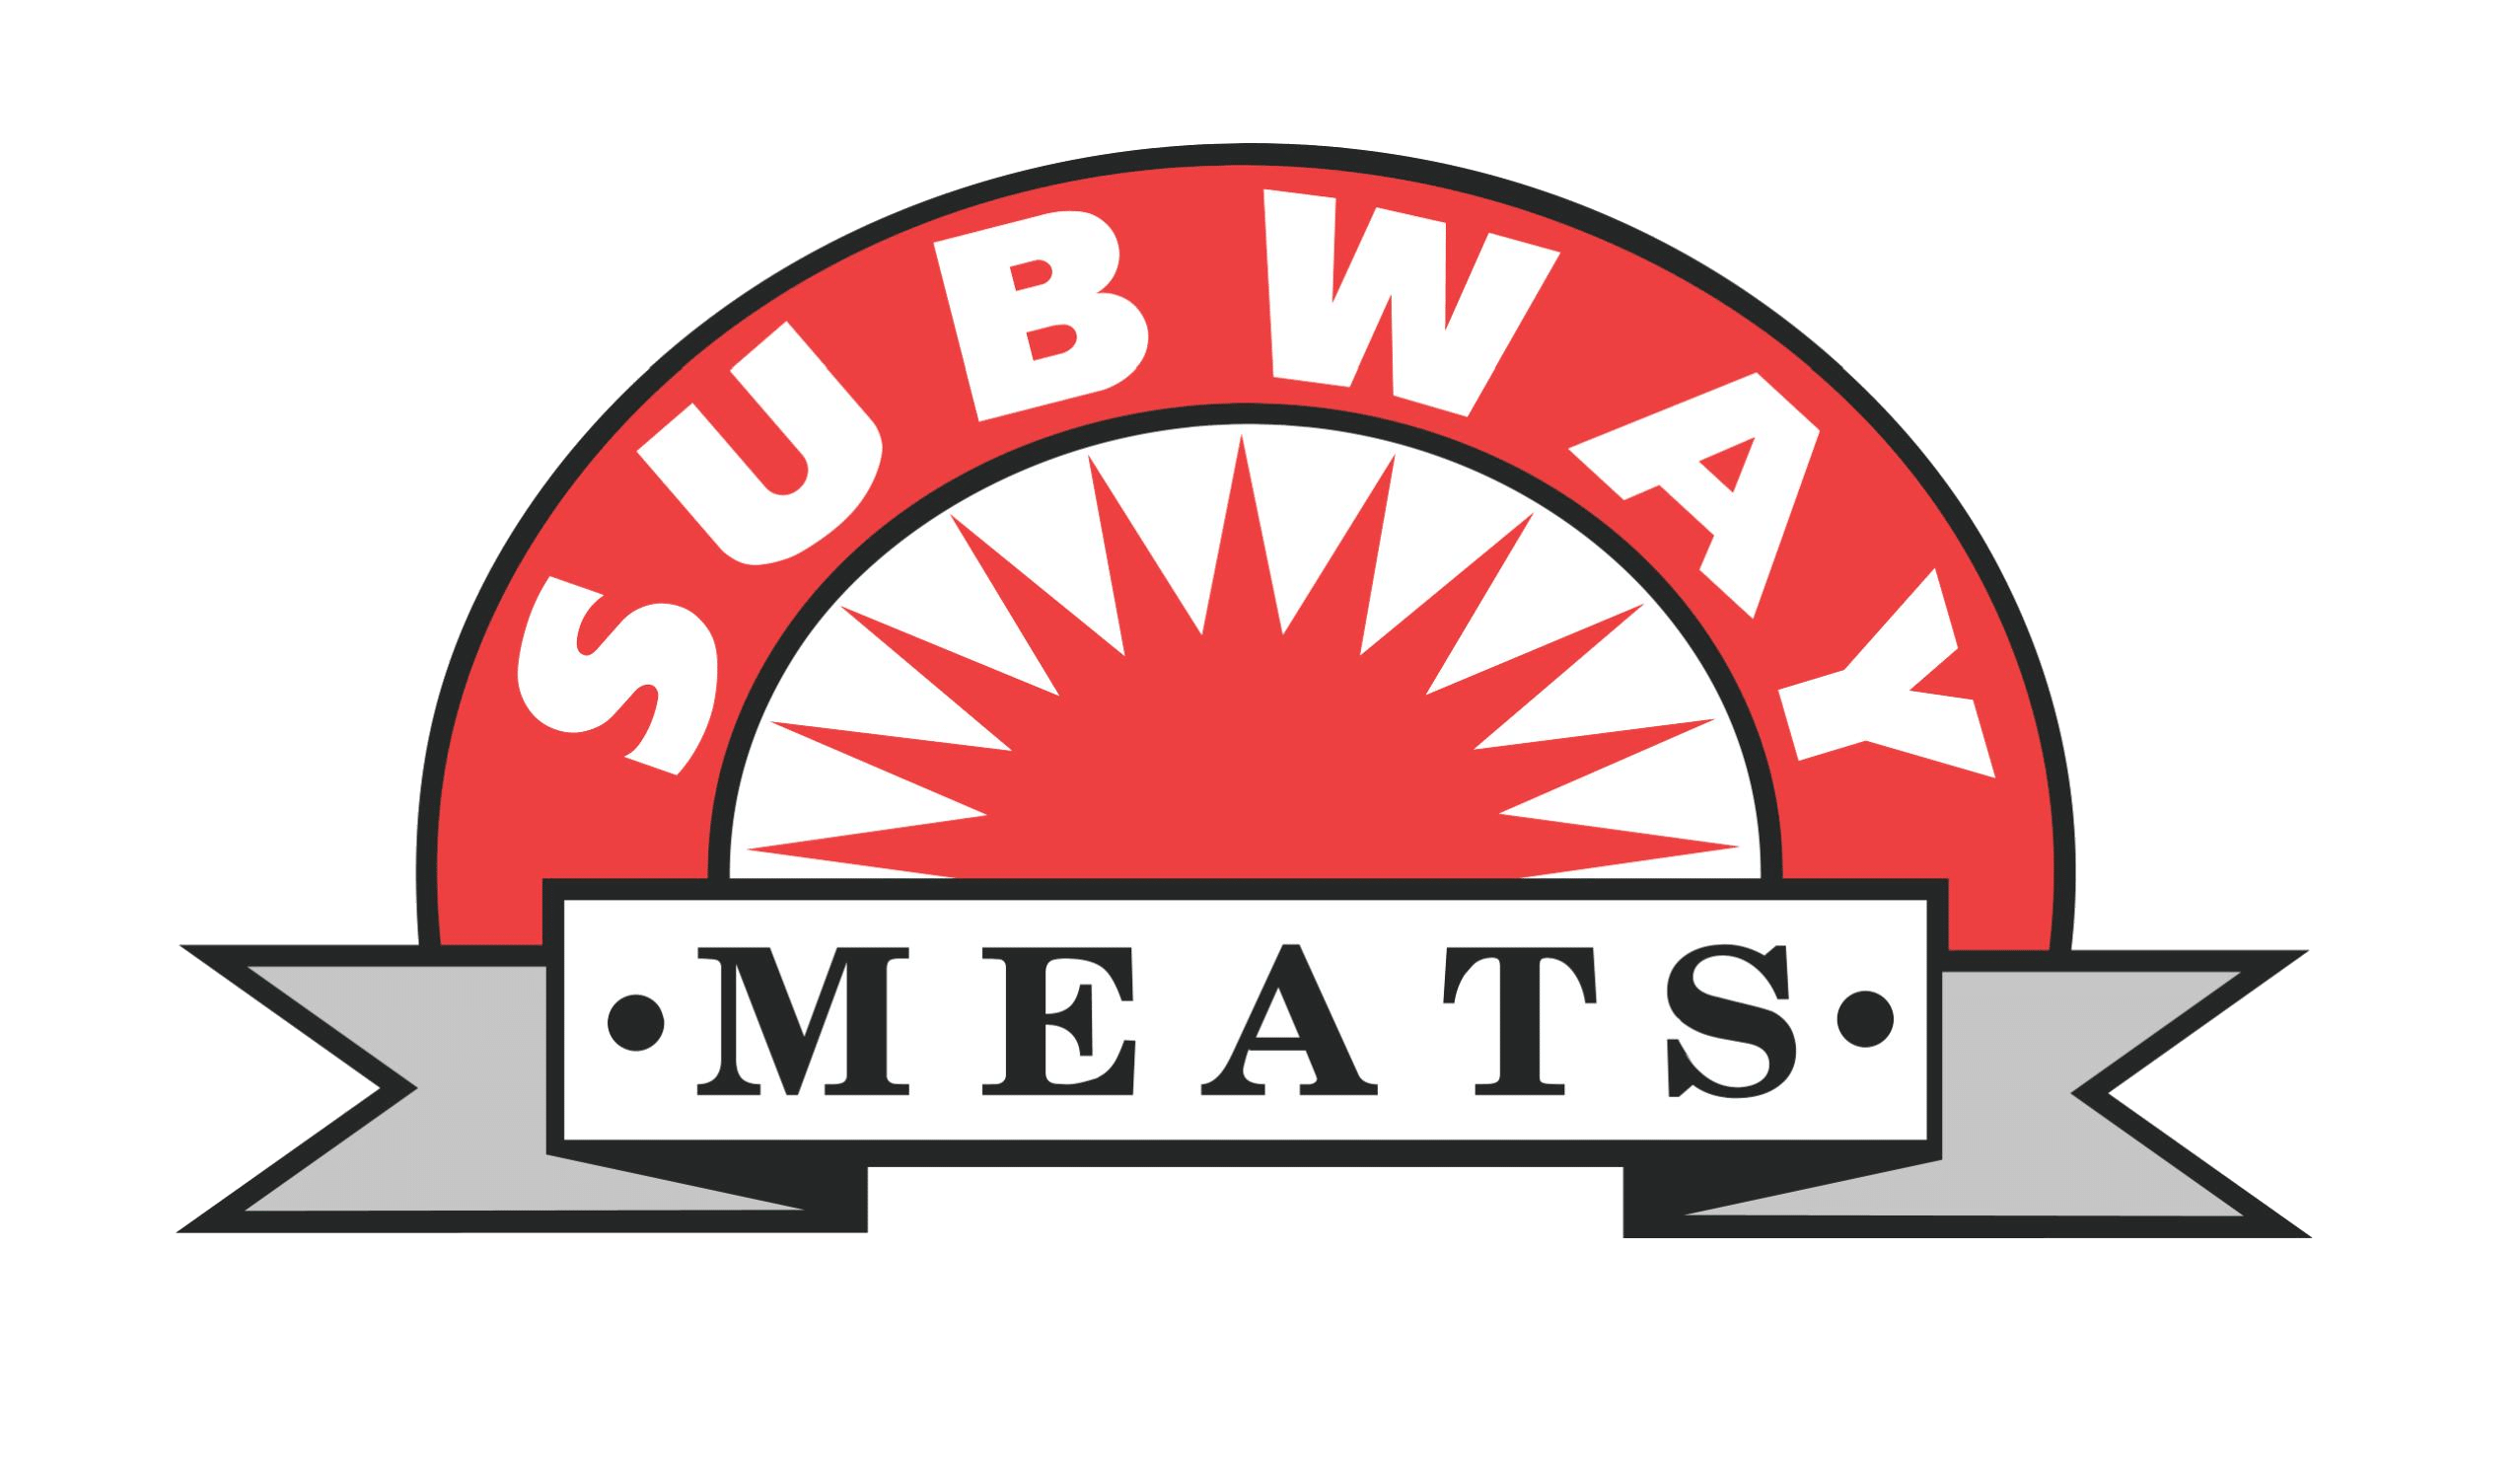 Subway Meats Logo